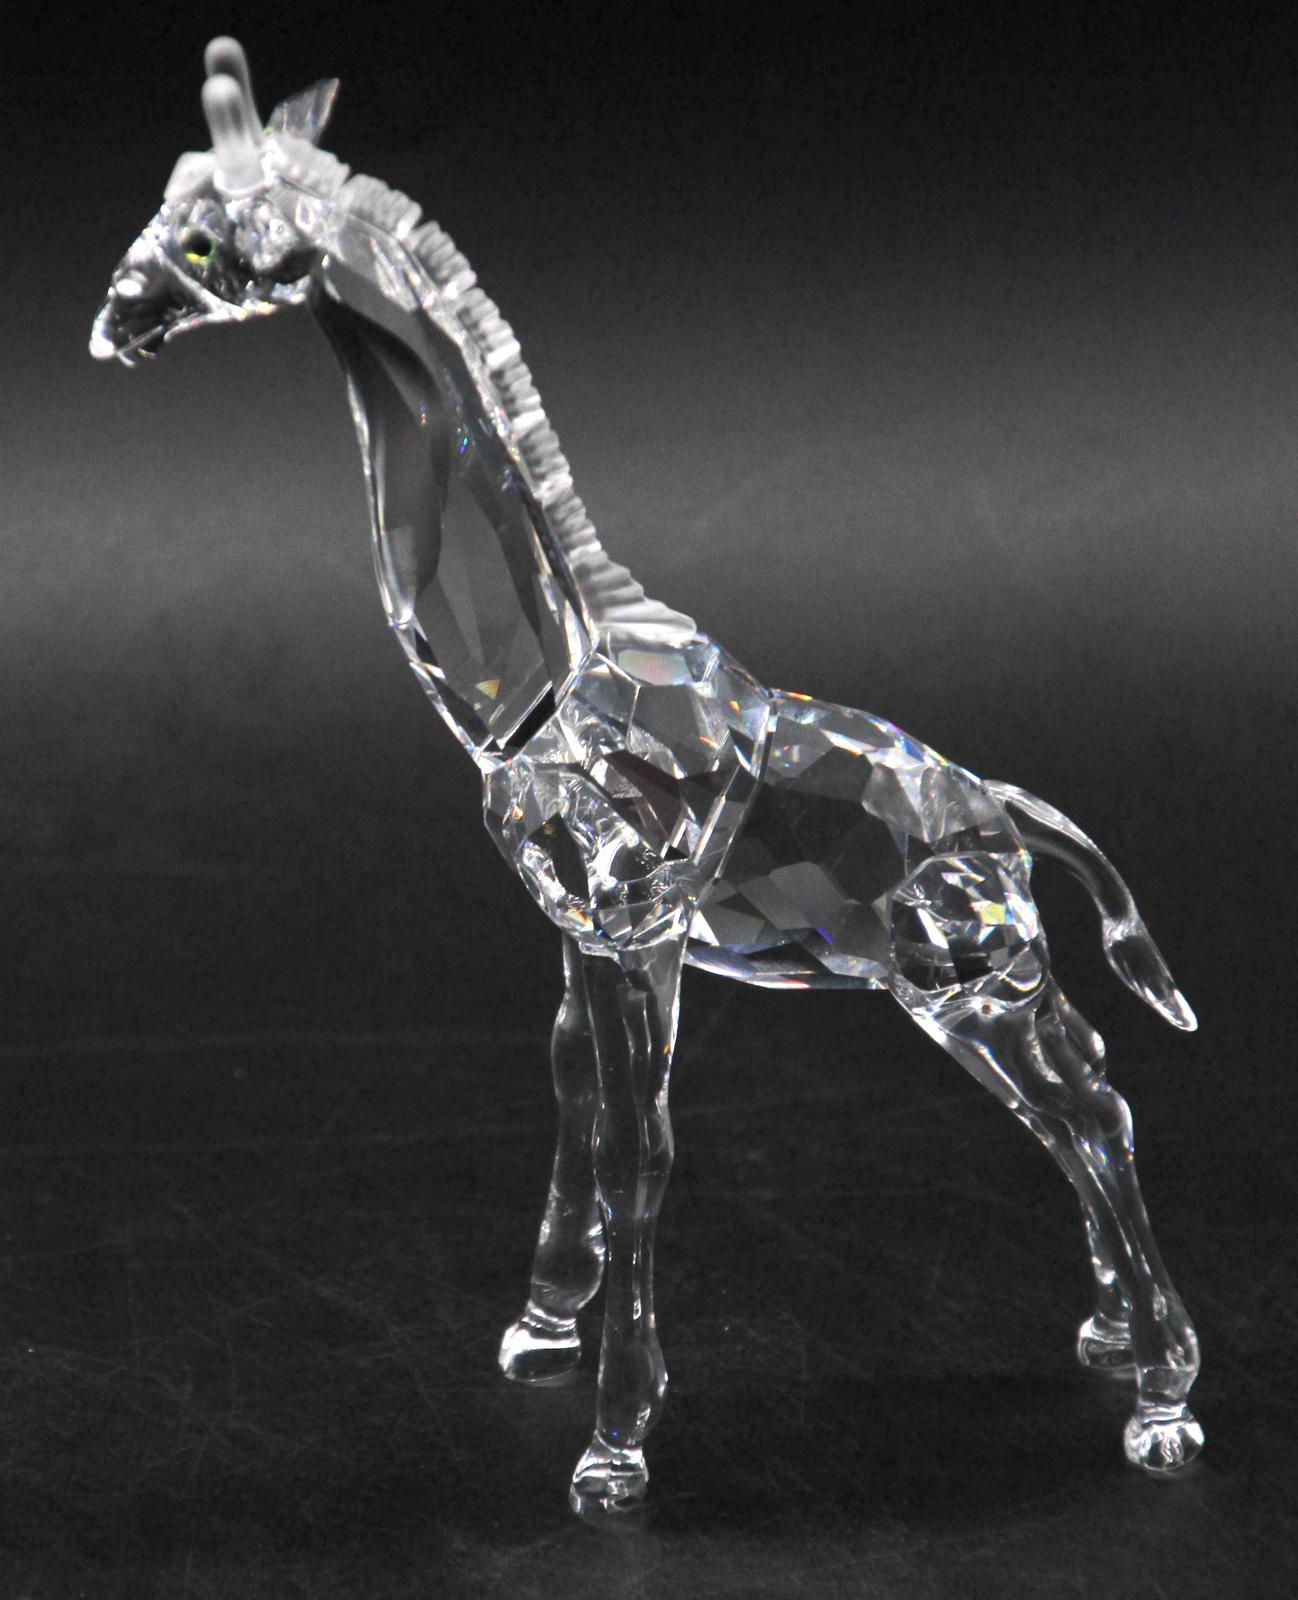 SWAROVSKI Crystal Animal Figurines | OldJW Auctioneers